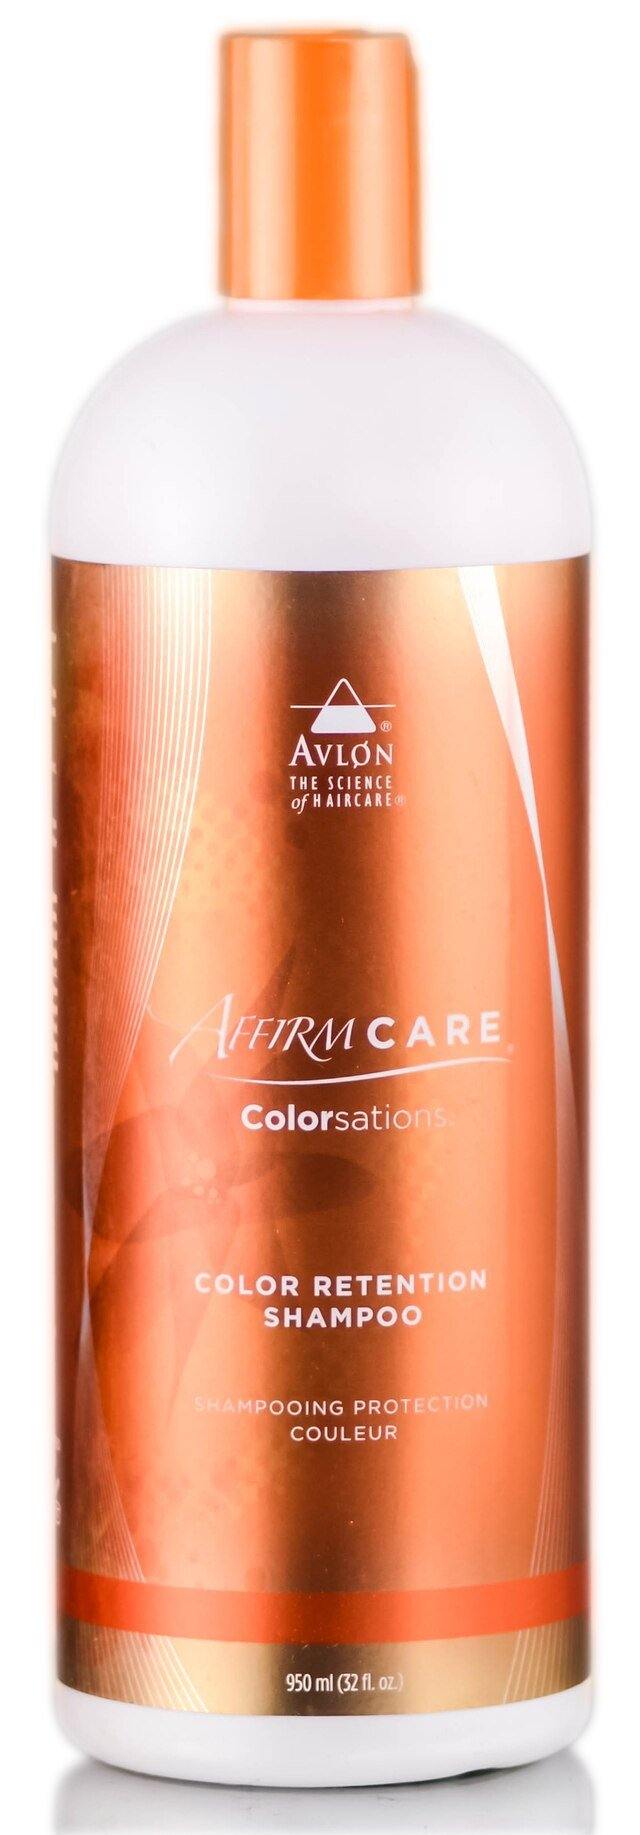 AffirmCare Colorsations Color Retention Shampoo - Saber Professional